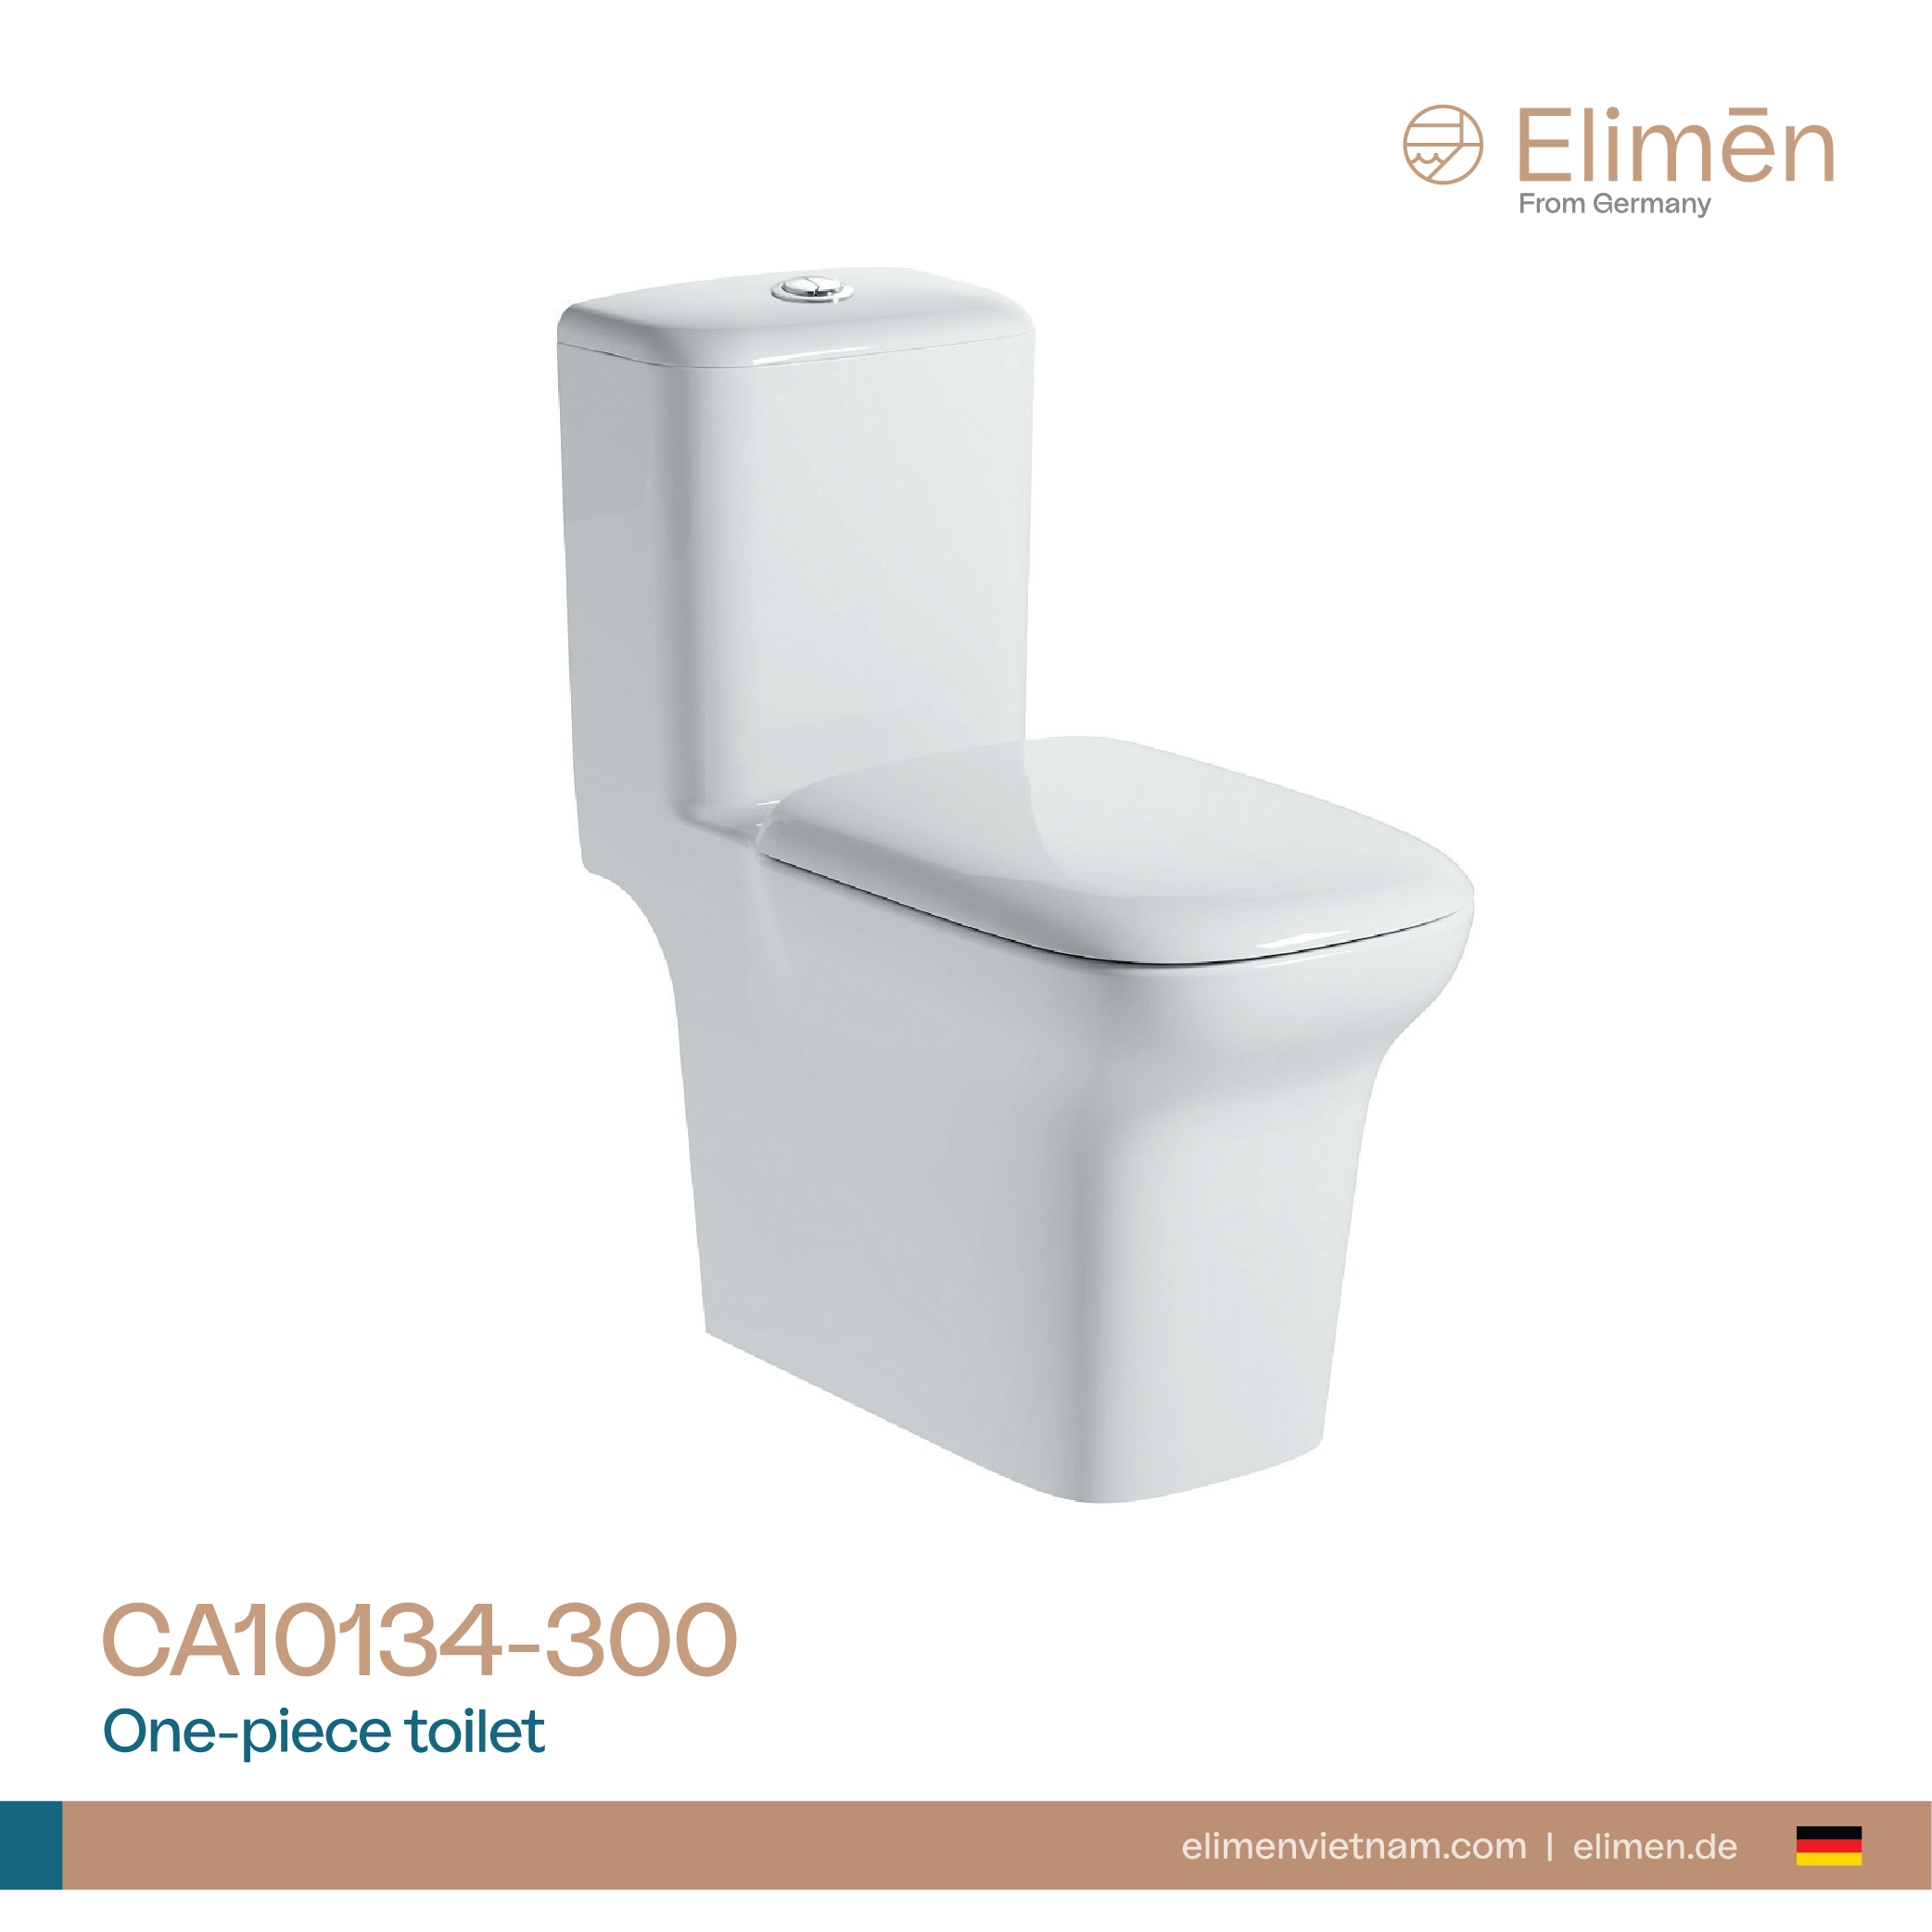 Elimen One-piece toilet - Code CA10134-30